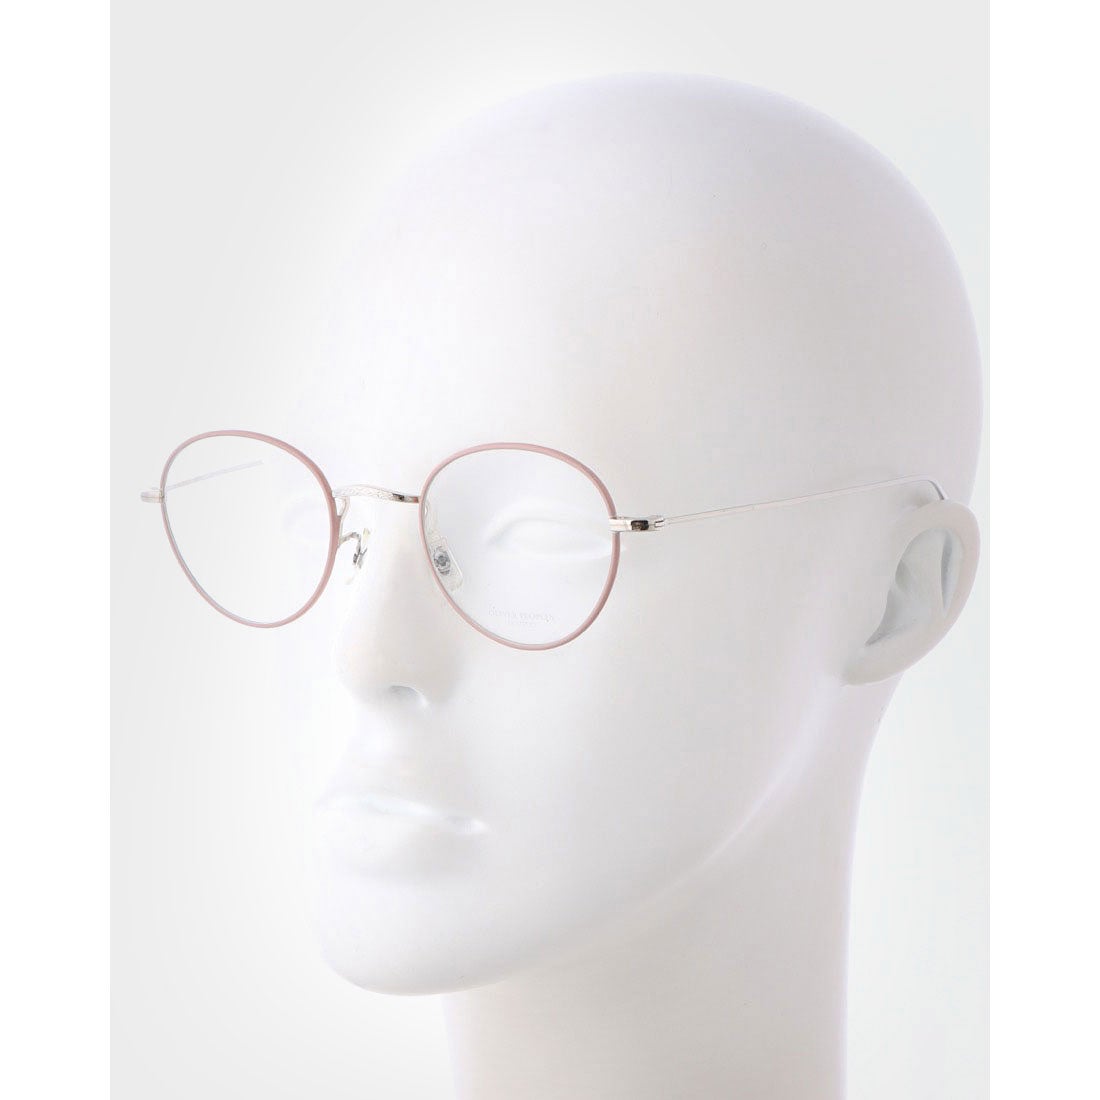 オリバーピープルズ OLIVER PEOPLES メガネ 眼鏡 アイウェア レディース メンズ （ピンク/シルバー）